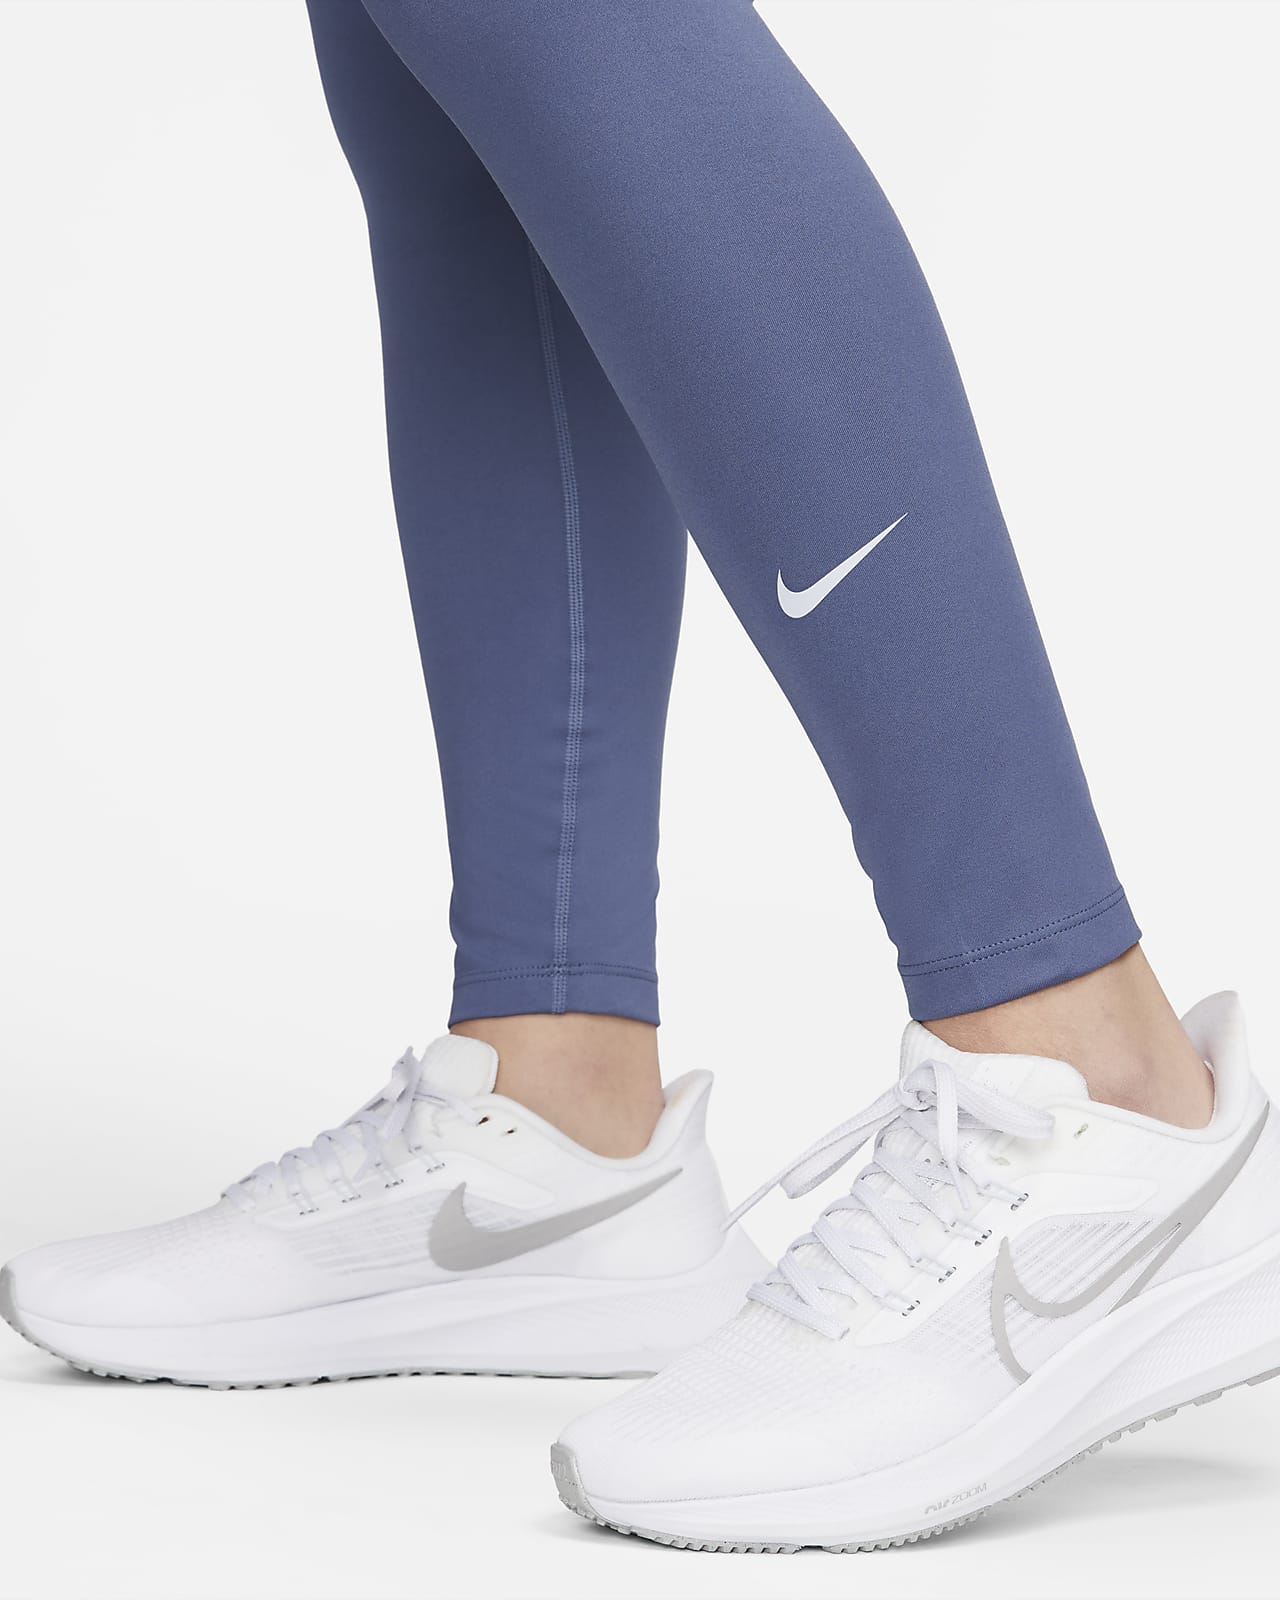 Nike One Women's Maternity Leggings